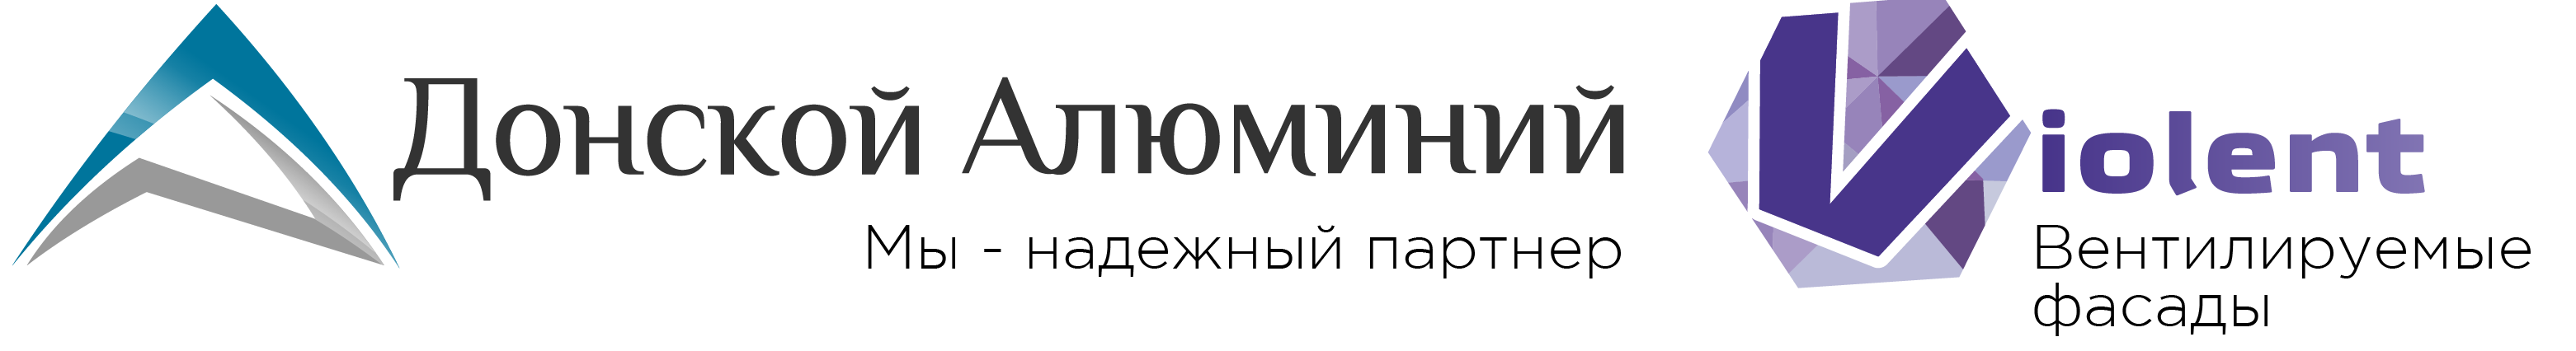 логотип Донской алюминий, Виолент